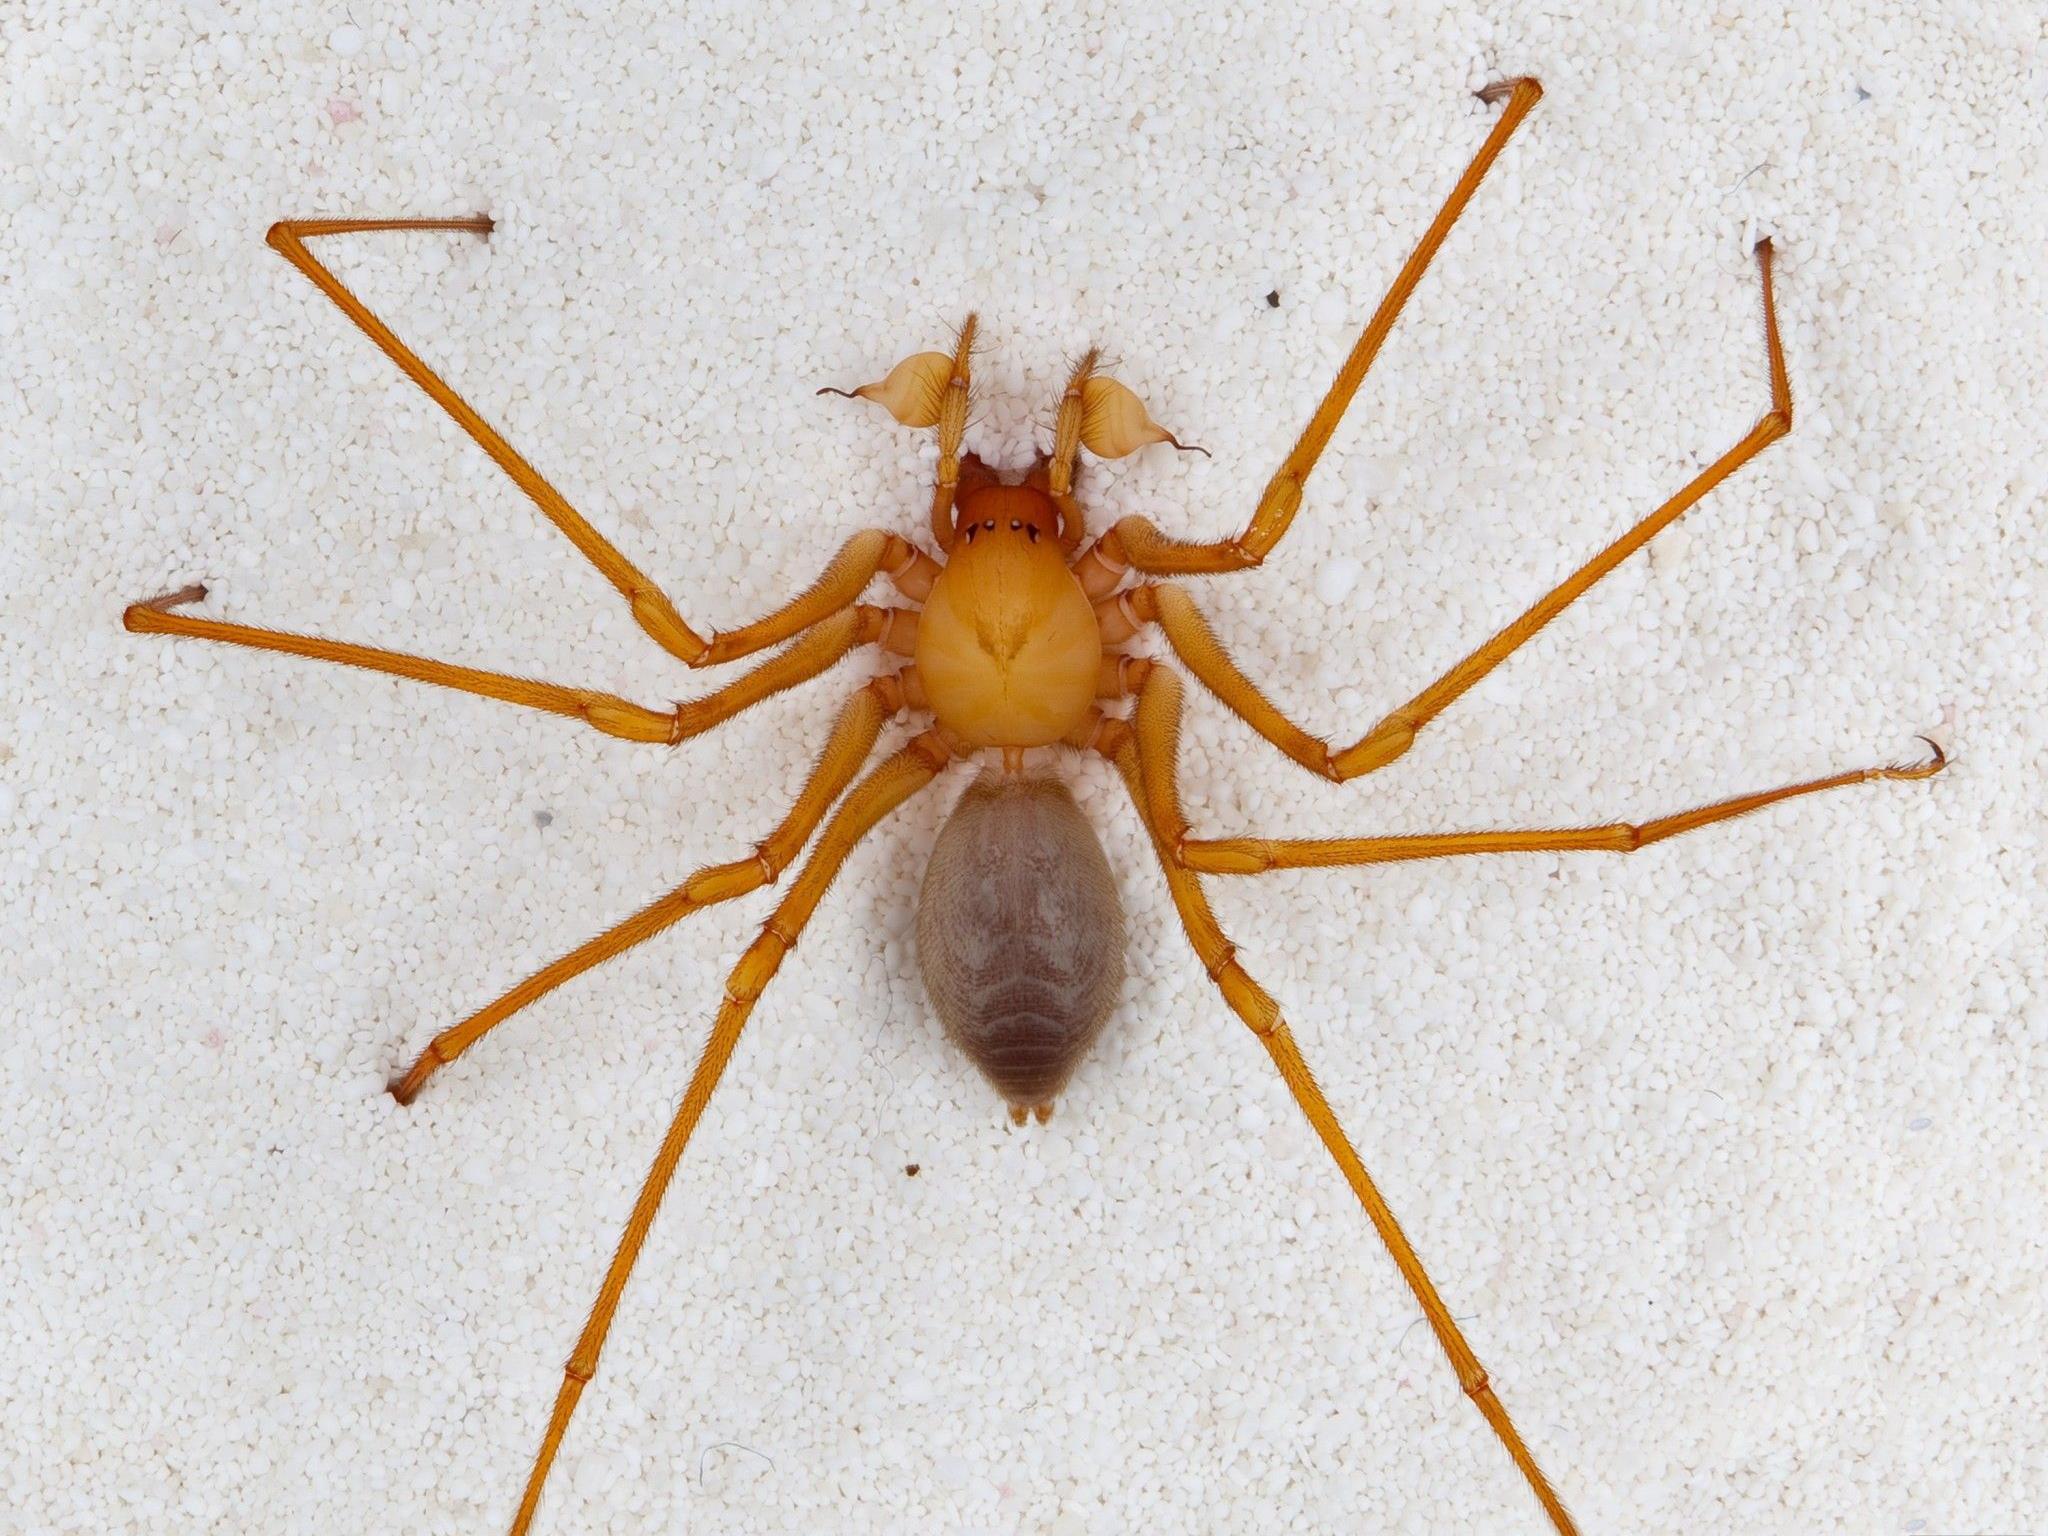 s ist eine kleine zoologische Sensation: In einer Höhle im Nordwesten der USA haben Forscher eine Spinne entdeckt, die in keine der bisher bekannten Familien des Spinnenstammbaums passt.